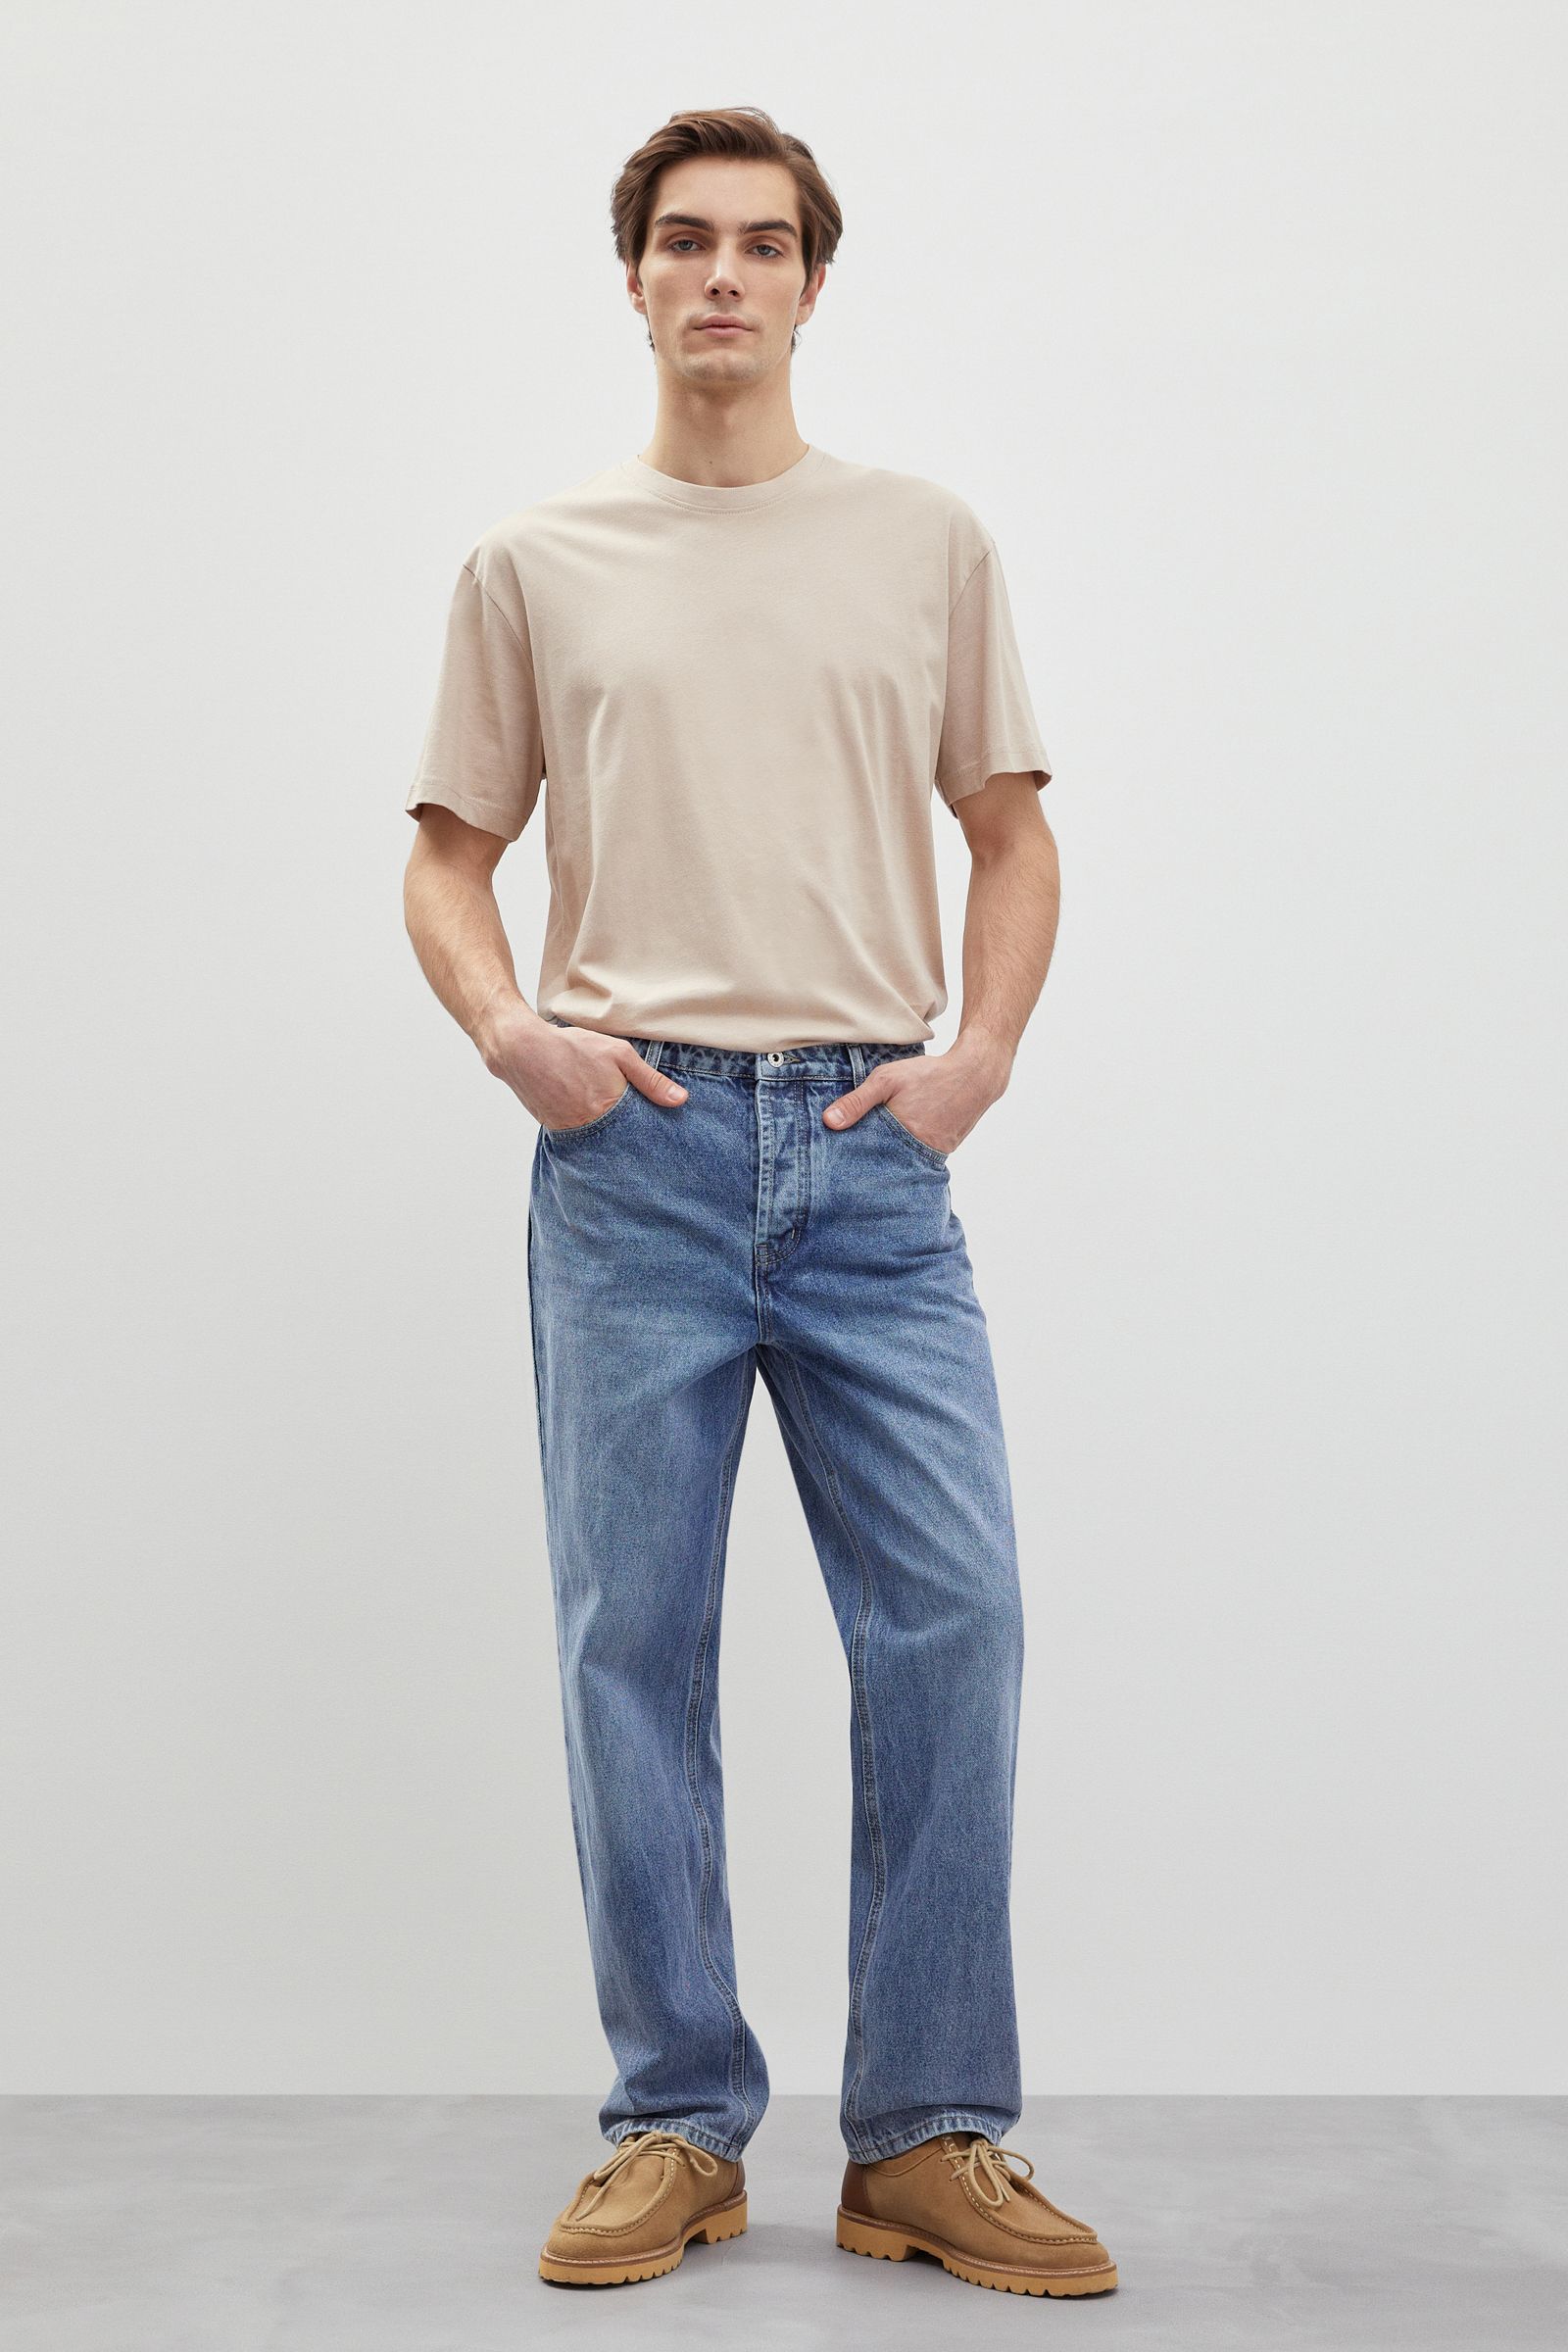 Женские прямые джинсы — купить в интернет-магазине Ламода